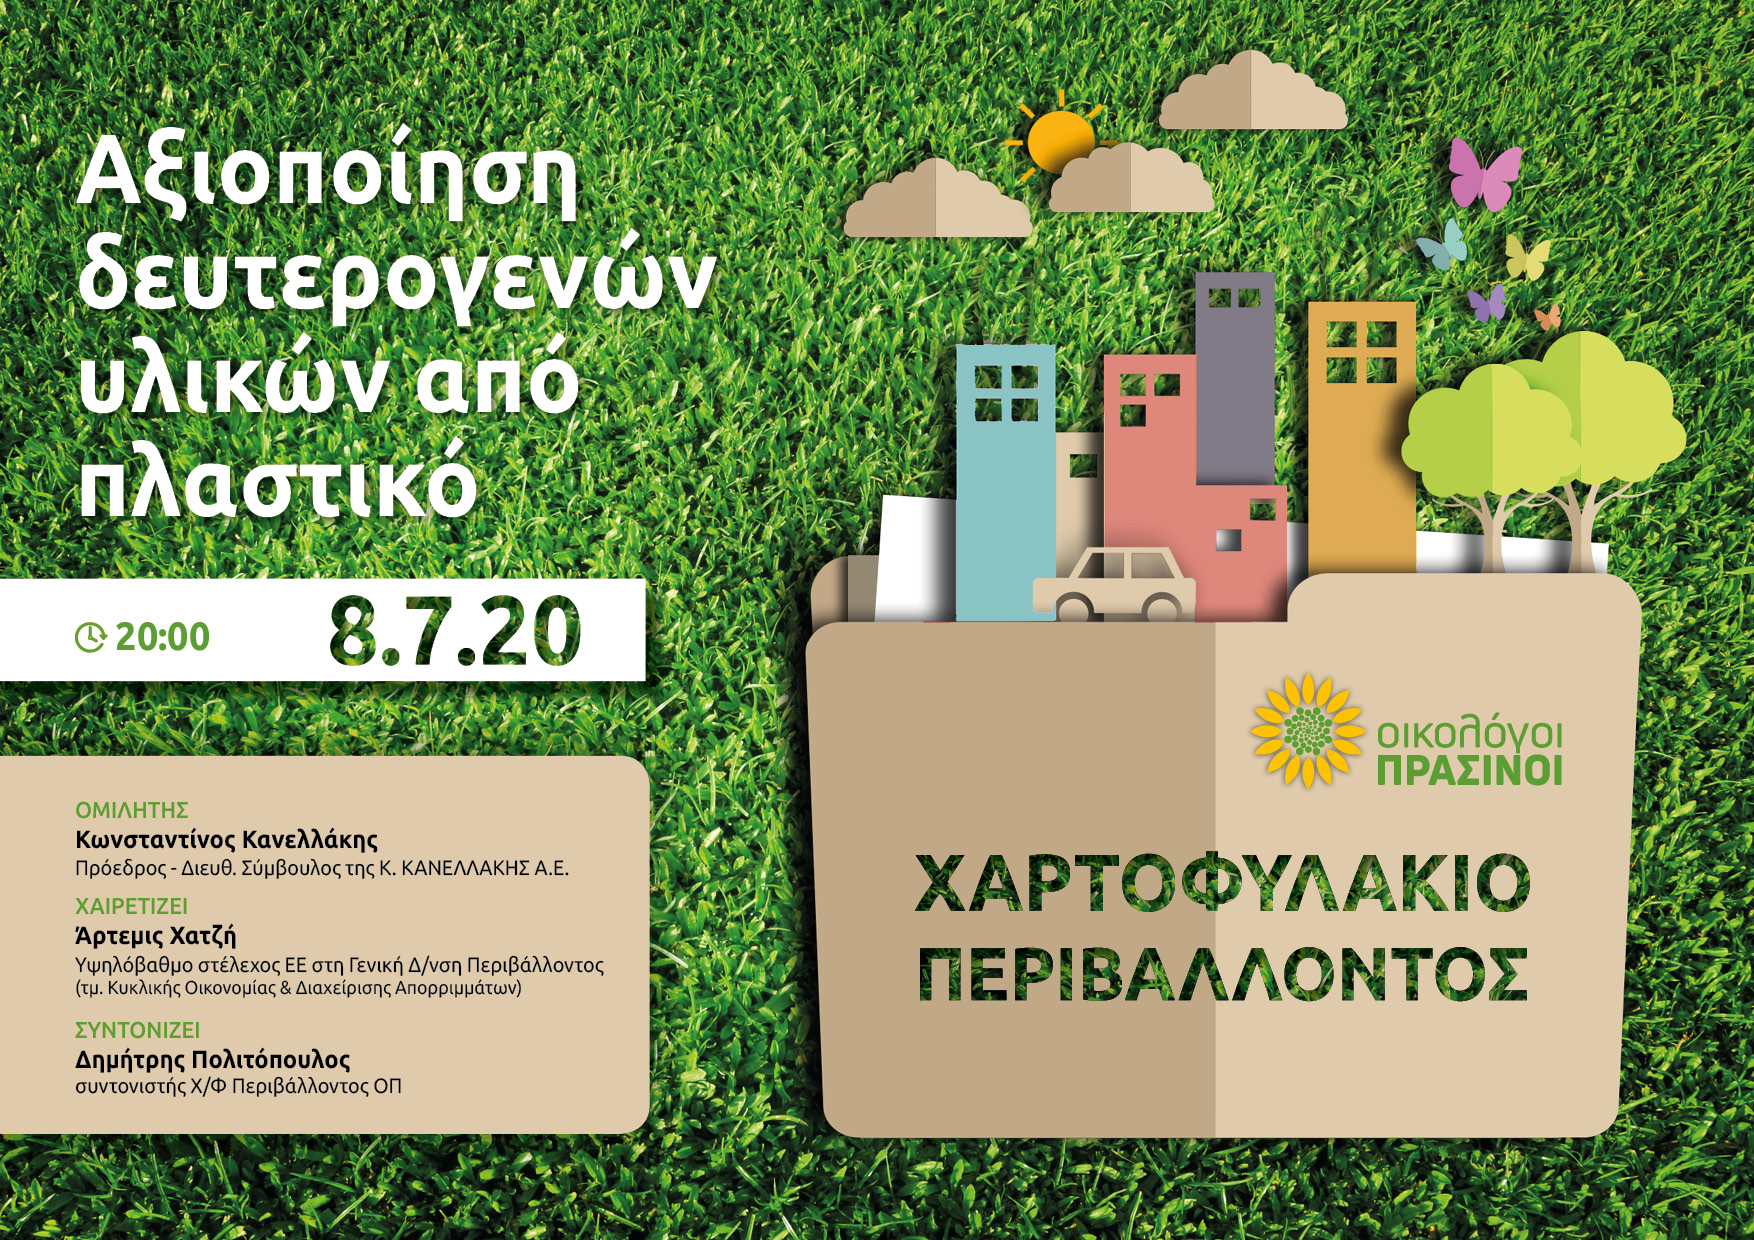 Διαδικτυακή συζήτηση του Χαρτοφυλακίου Περιβάλλοντος των Οικολόγων Πράσινων, την Τετάρτη 8 Ιουλίου, στις 20:00. Το θέμα της συζήτησης είναι η “Κυκλική Οικονομία – Αξιοποίηση Δευτερογενών Υλικών από Πλαστικό” με ομιλητή τον […]